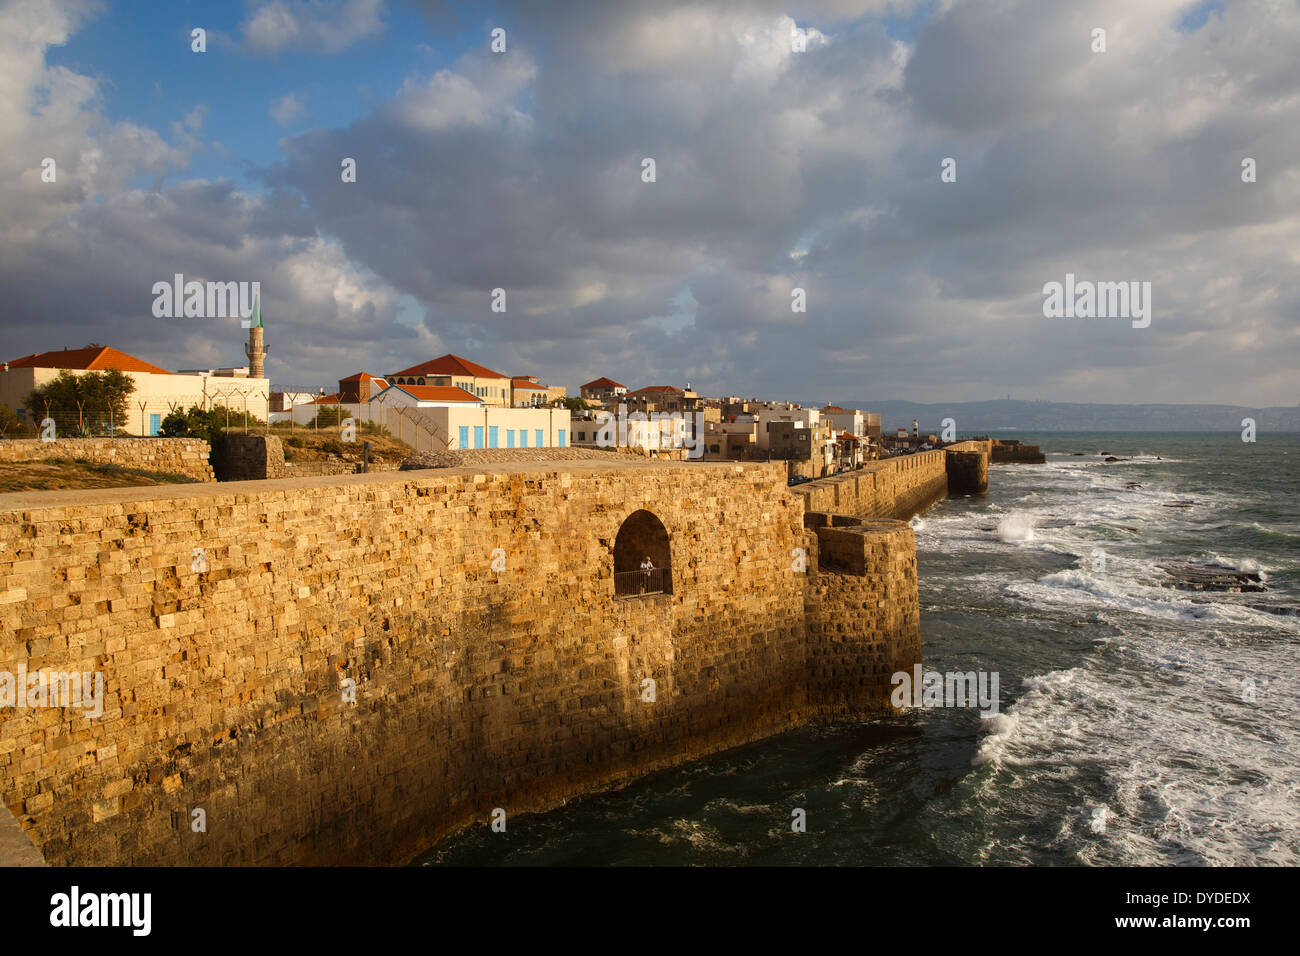 Vistas de las murallas de la ciudad antigua, Akko (Acre), Israel. Foto de stock